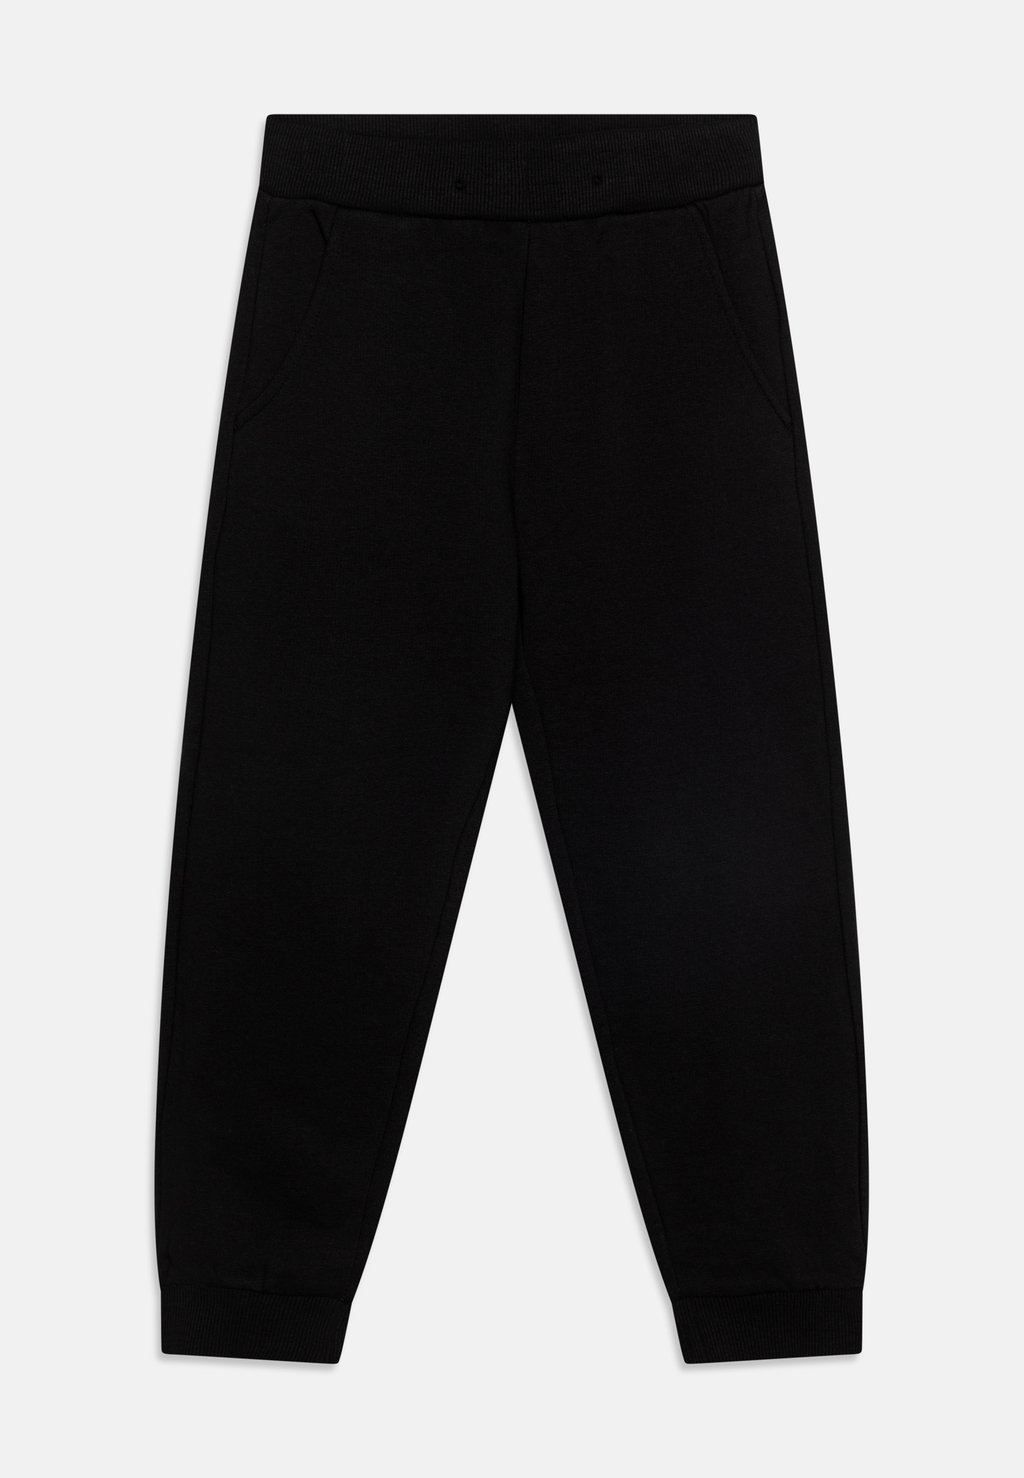 Спортивные штаны TROUSERS BASIC UNISEX Lindex, цвет black спортивные штаны pants unisex barrow цвет black